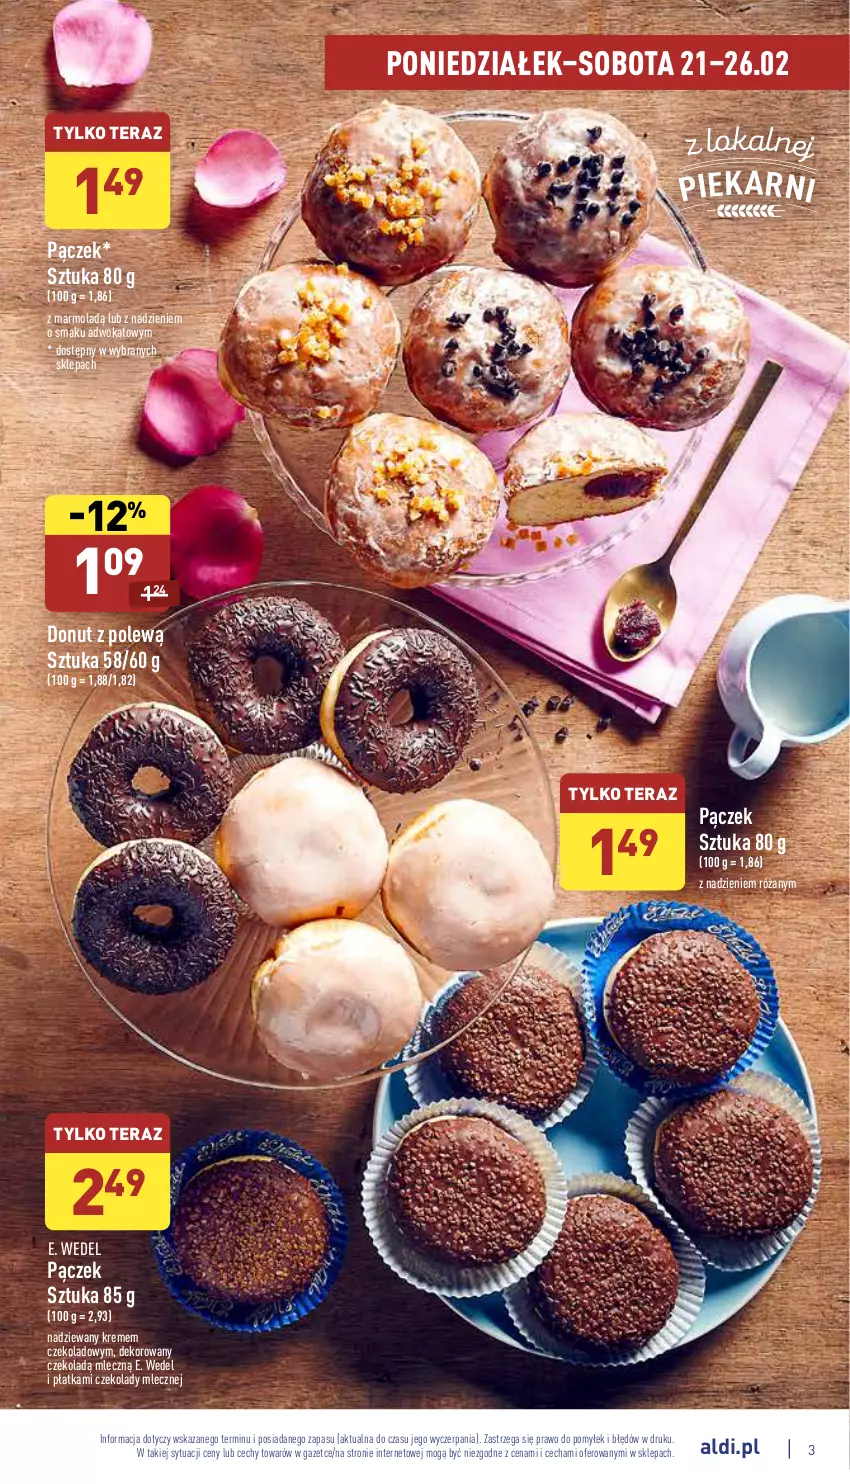 Gazetka promocyjna Aldi - Katalog spożywczy - ważna 21.02 do 26.02.2022 - strona 3 - produkty: Donut, E. Wedel, Mola, Pączek, Róża, Tera